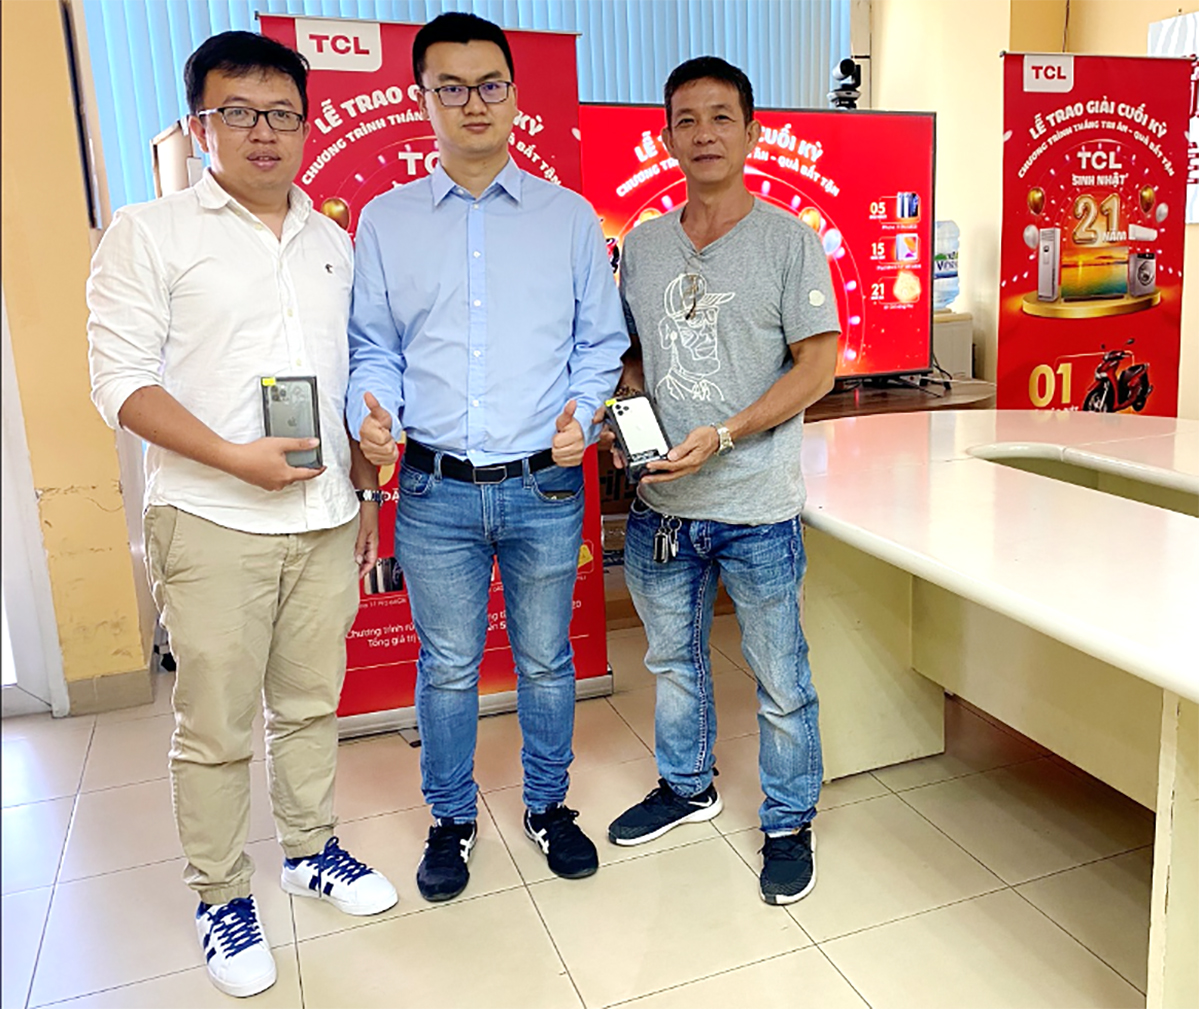 Đại diện TCL Việt Nam (giữa) trao giải nhất cho khách hàng